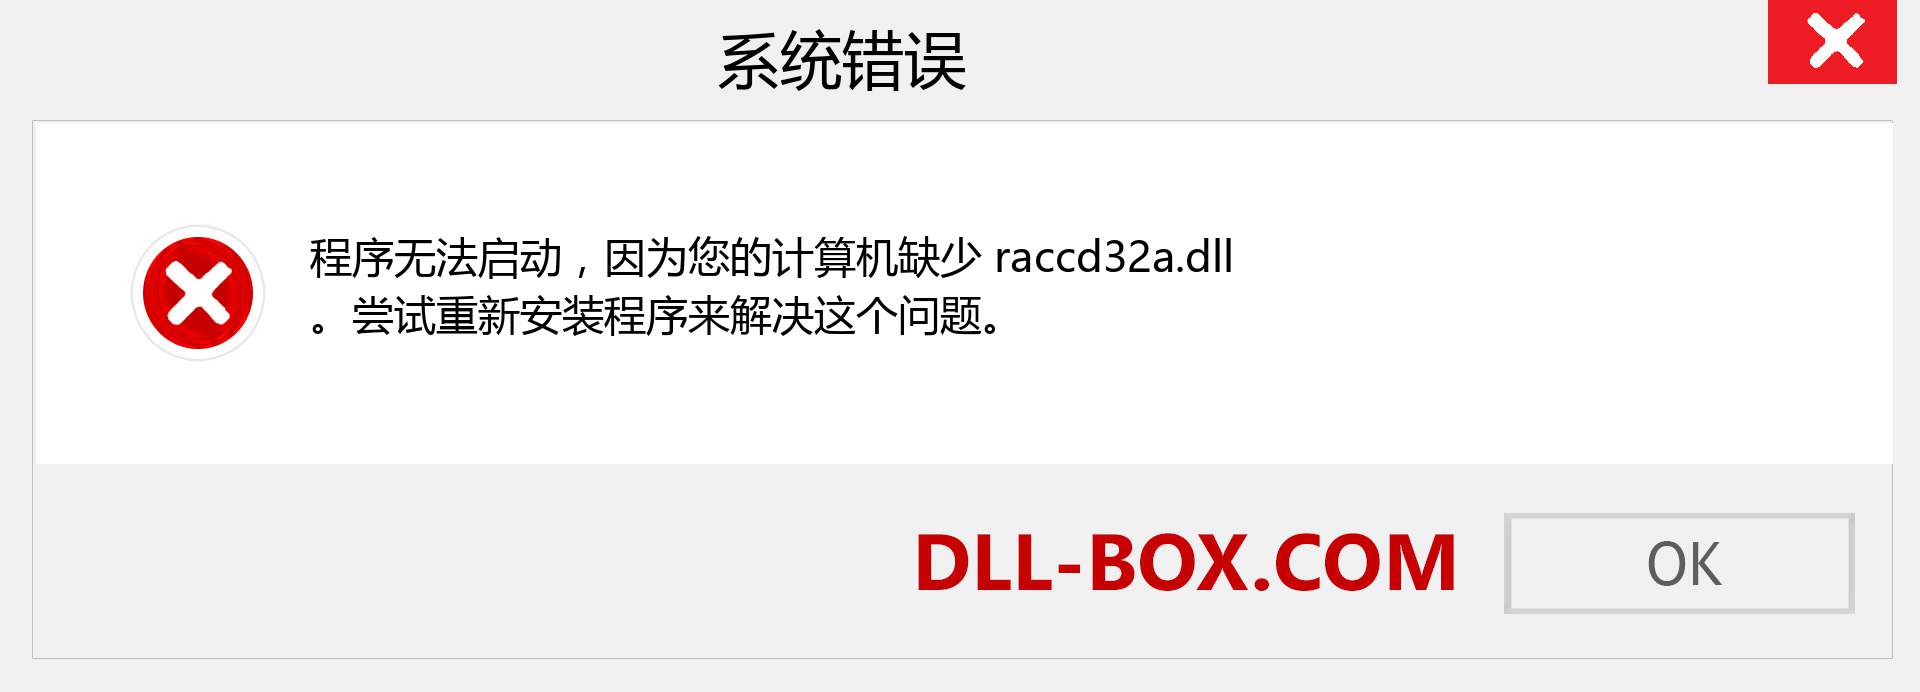 raccd32a.dll 文件丢失？。 适用于 Windows 7、8、10 的下载 - 修复 Windows、照片、图像上的 raccd32a dll 丢失错误